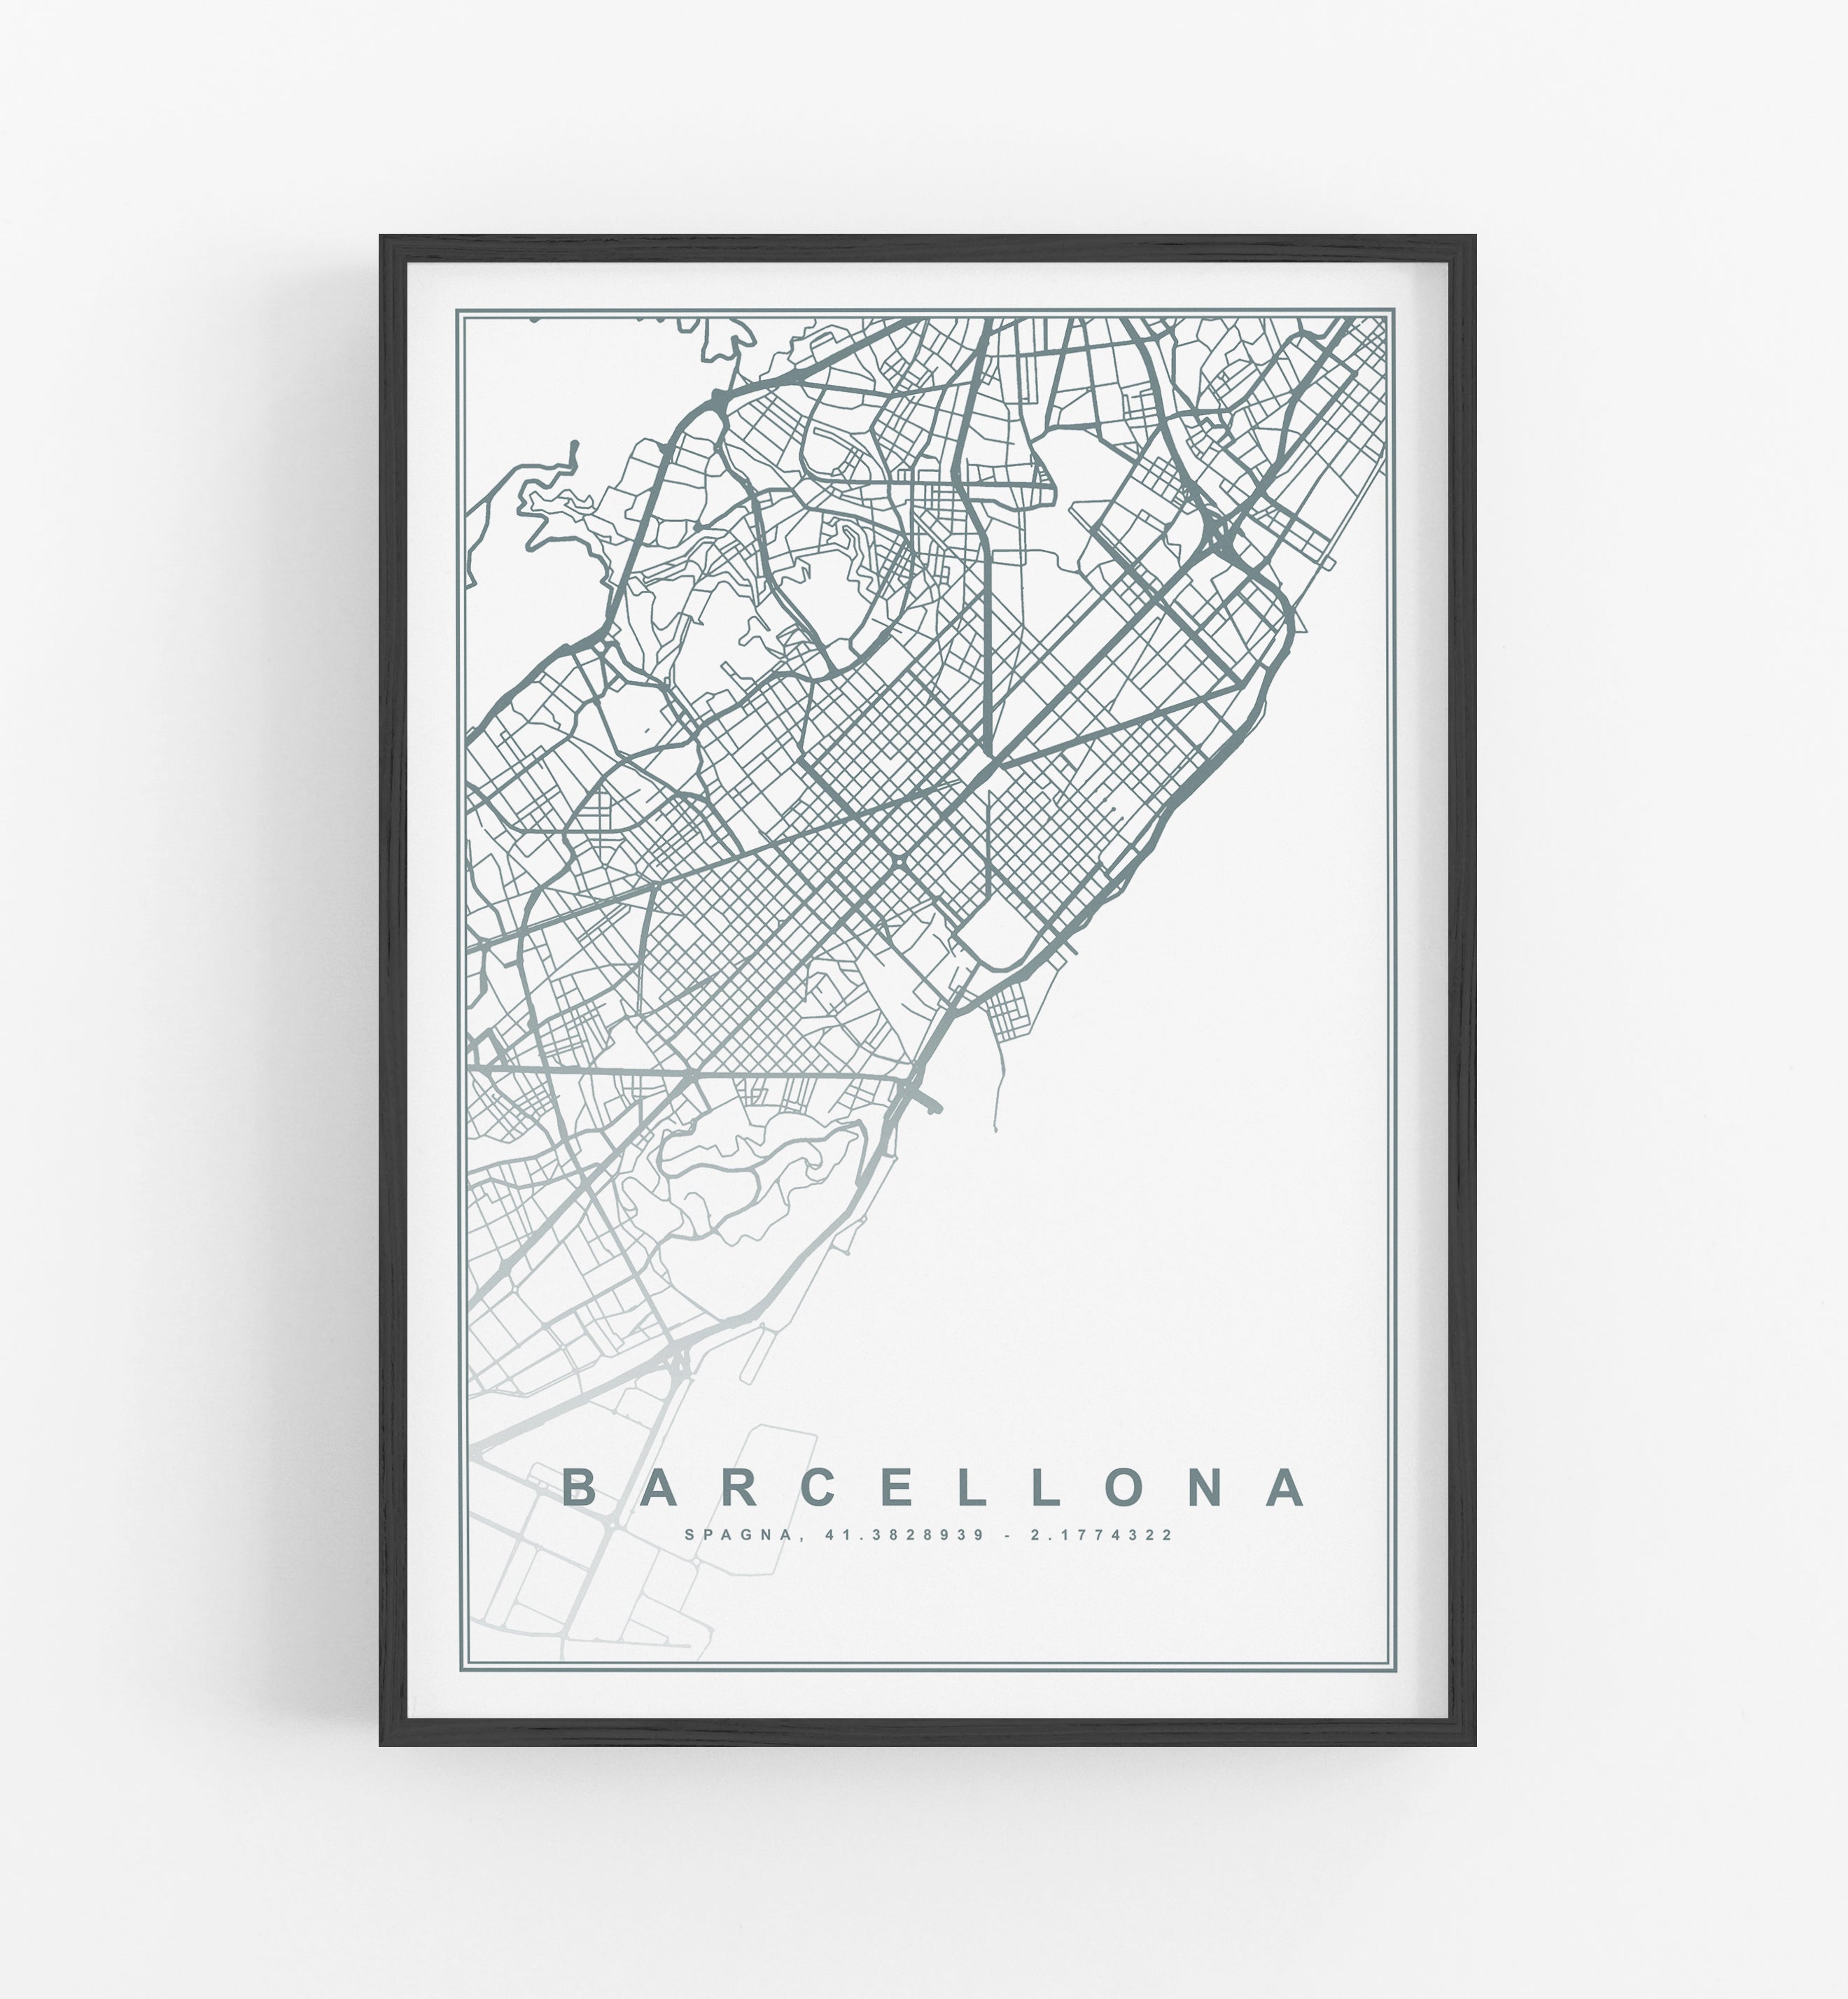 Mappa Barcellona